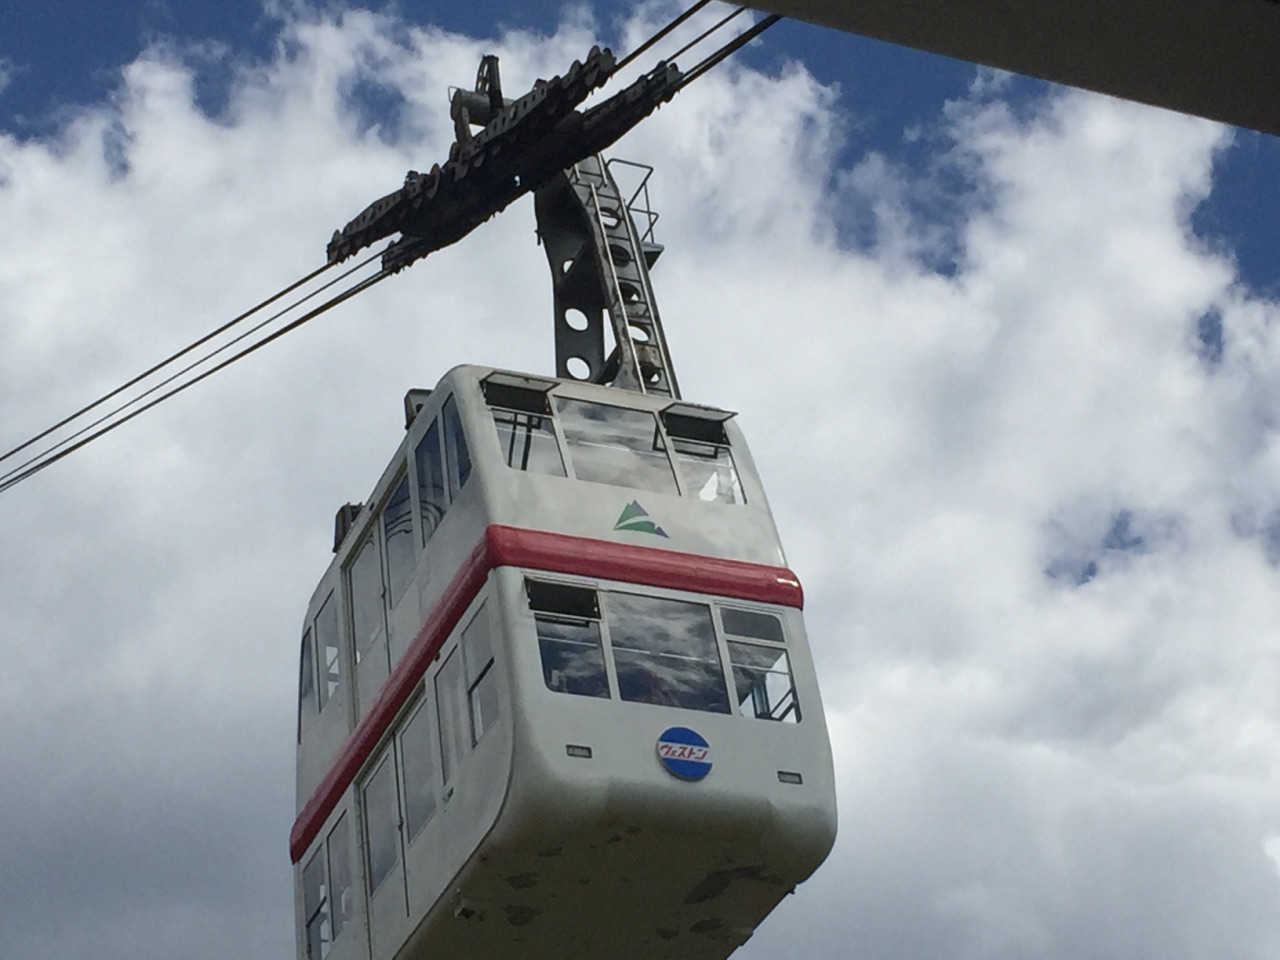 标高2156m的新穗高缆车 是日本唯一的能在二层楼的高空缆车上  是登高远望阿尔卑斯山的首选   由